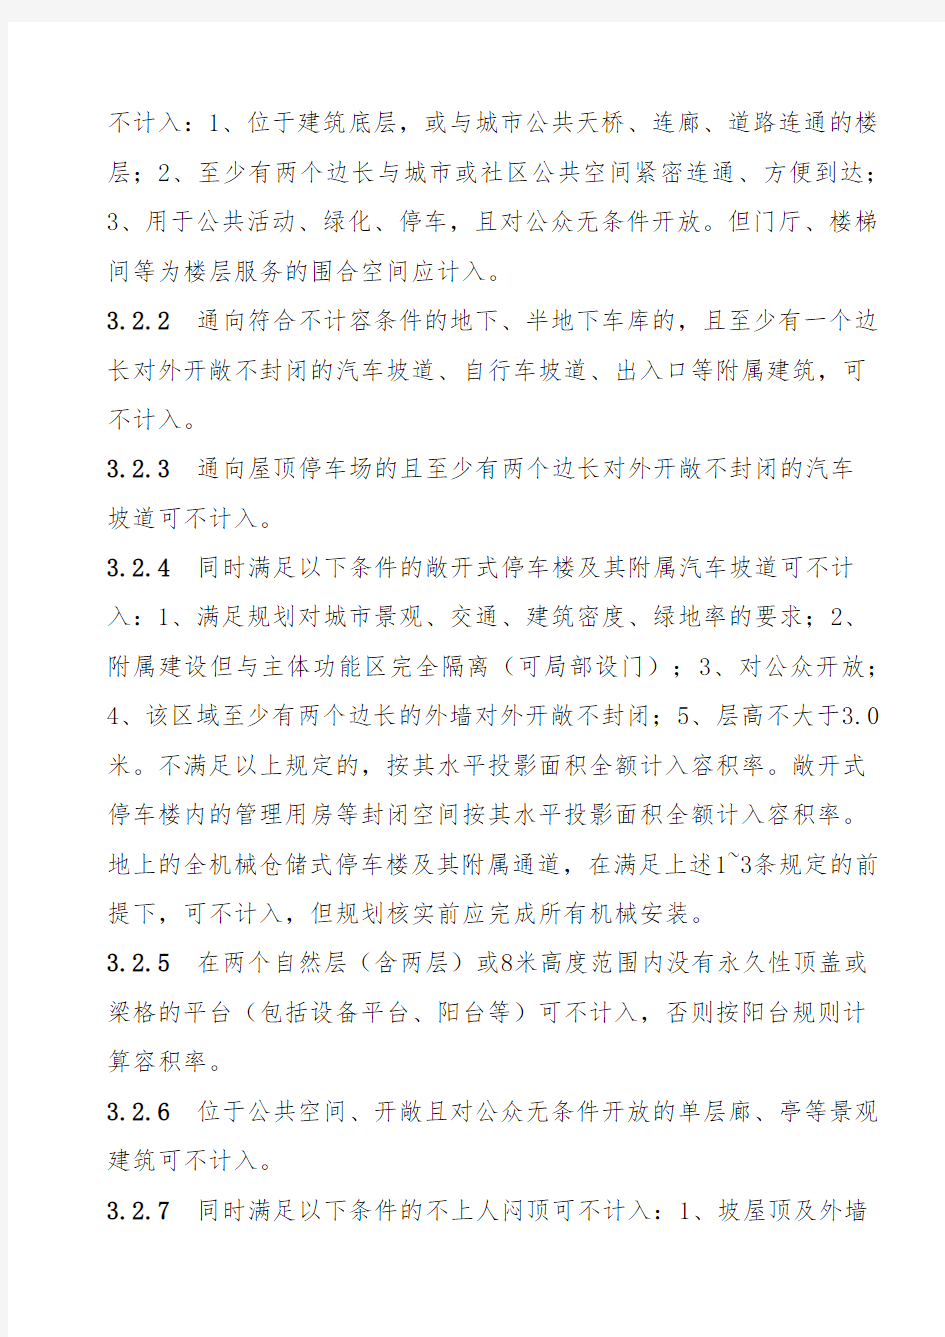 江苏省城市规划管理技术规定 ——苏州市实施细则之一“指标核定规则”(2015年版)